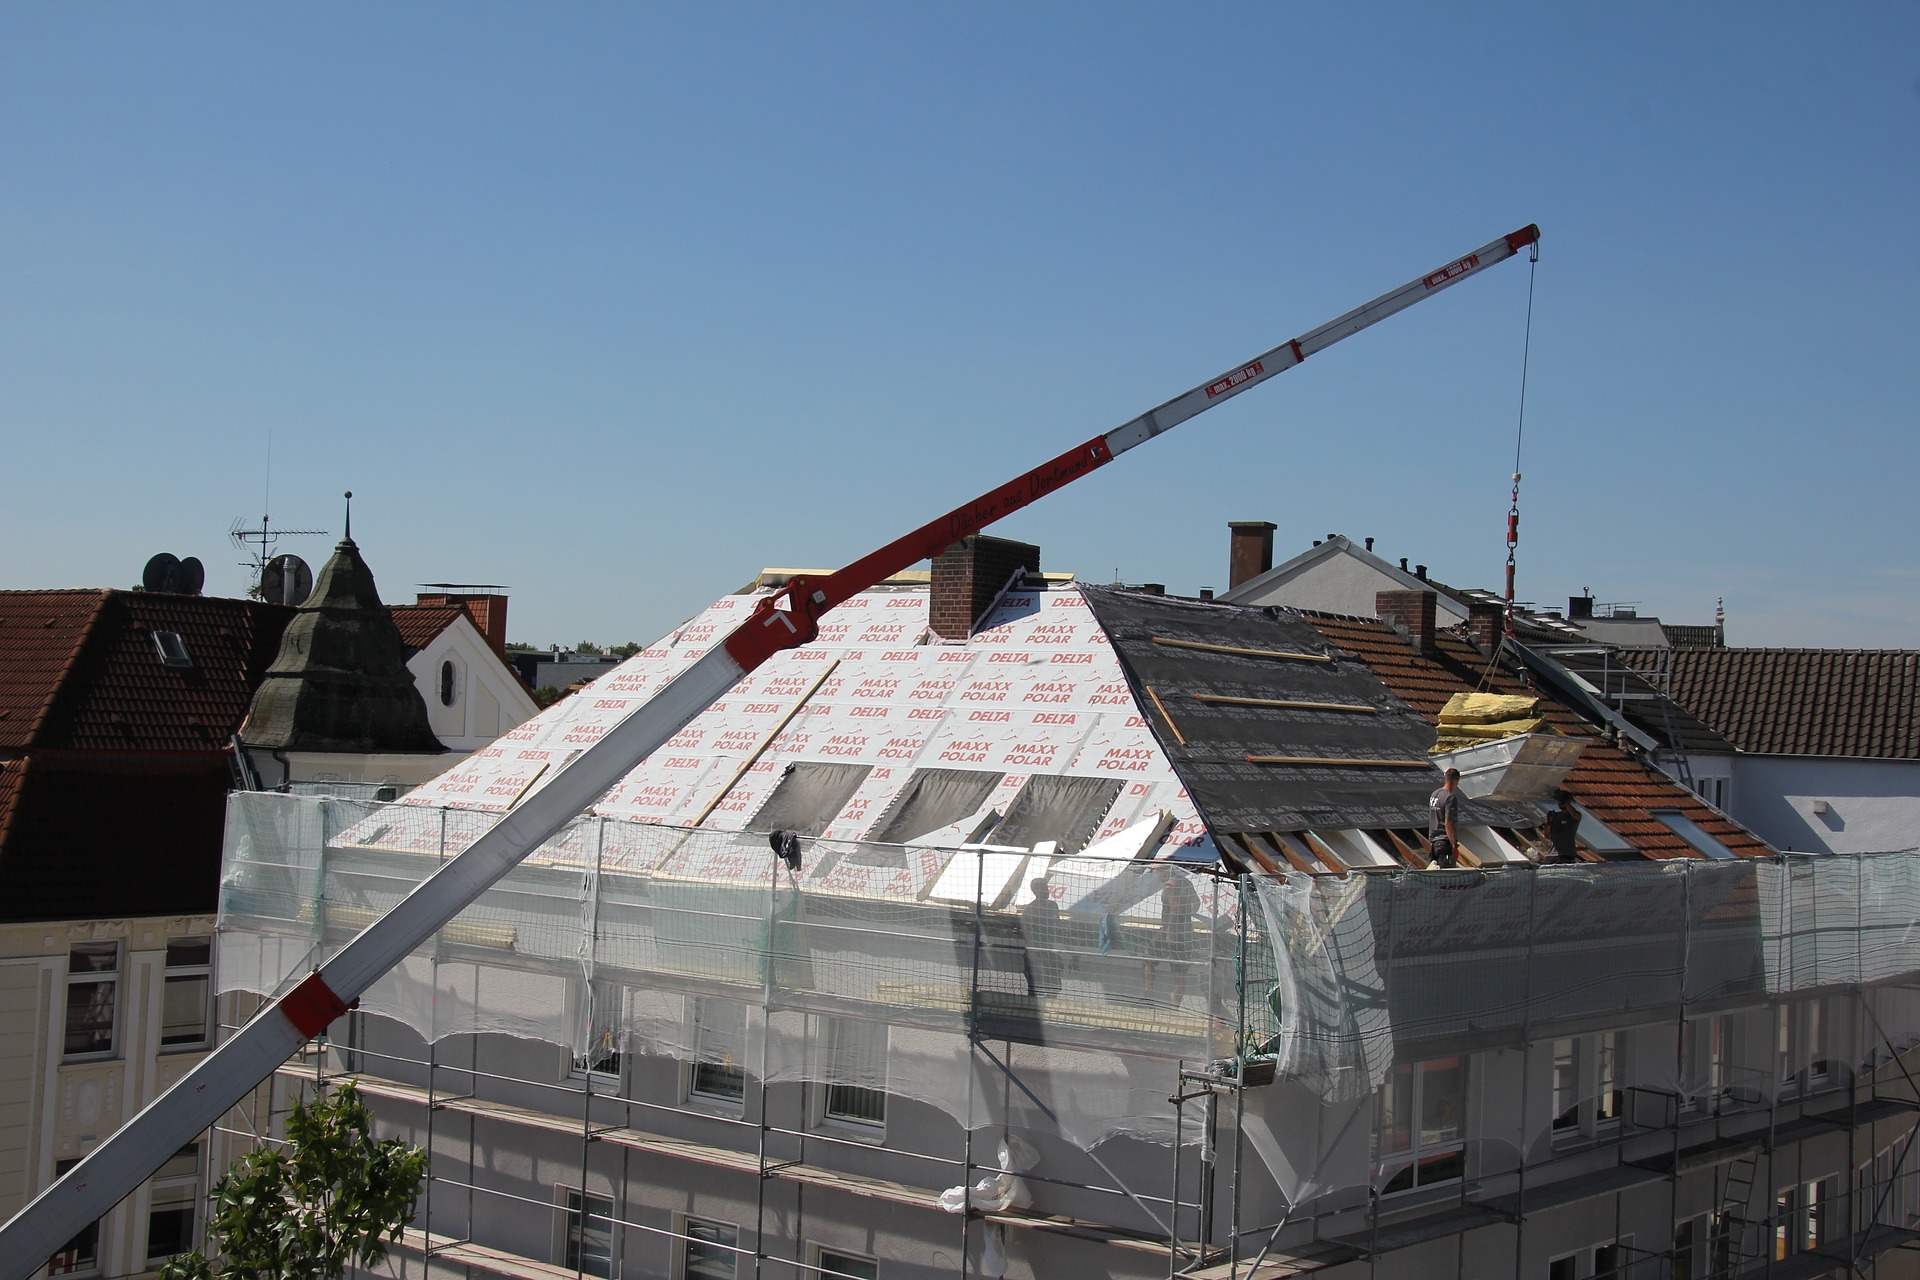 roofing crane lifting materials